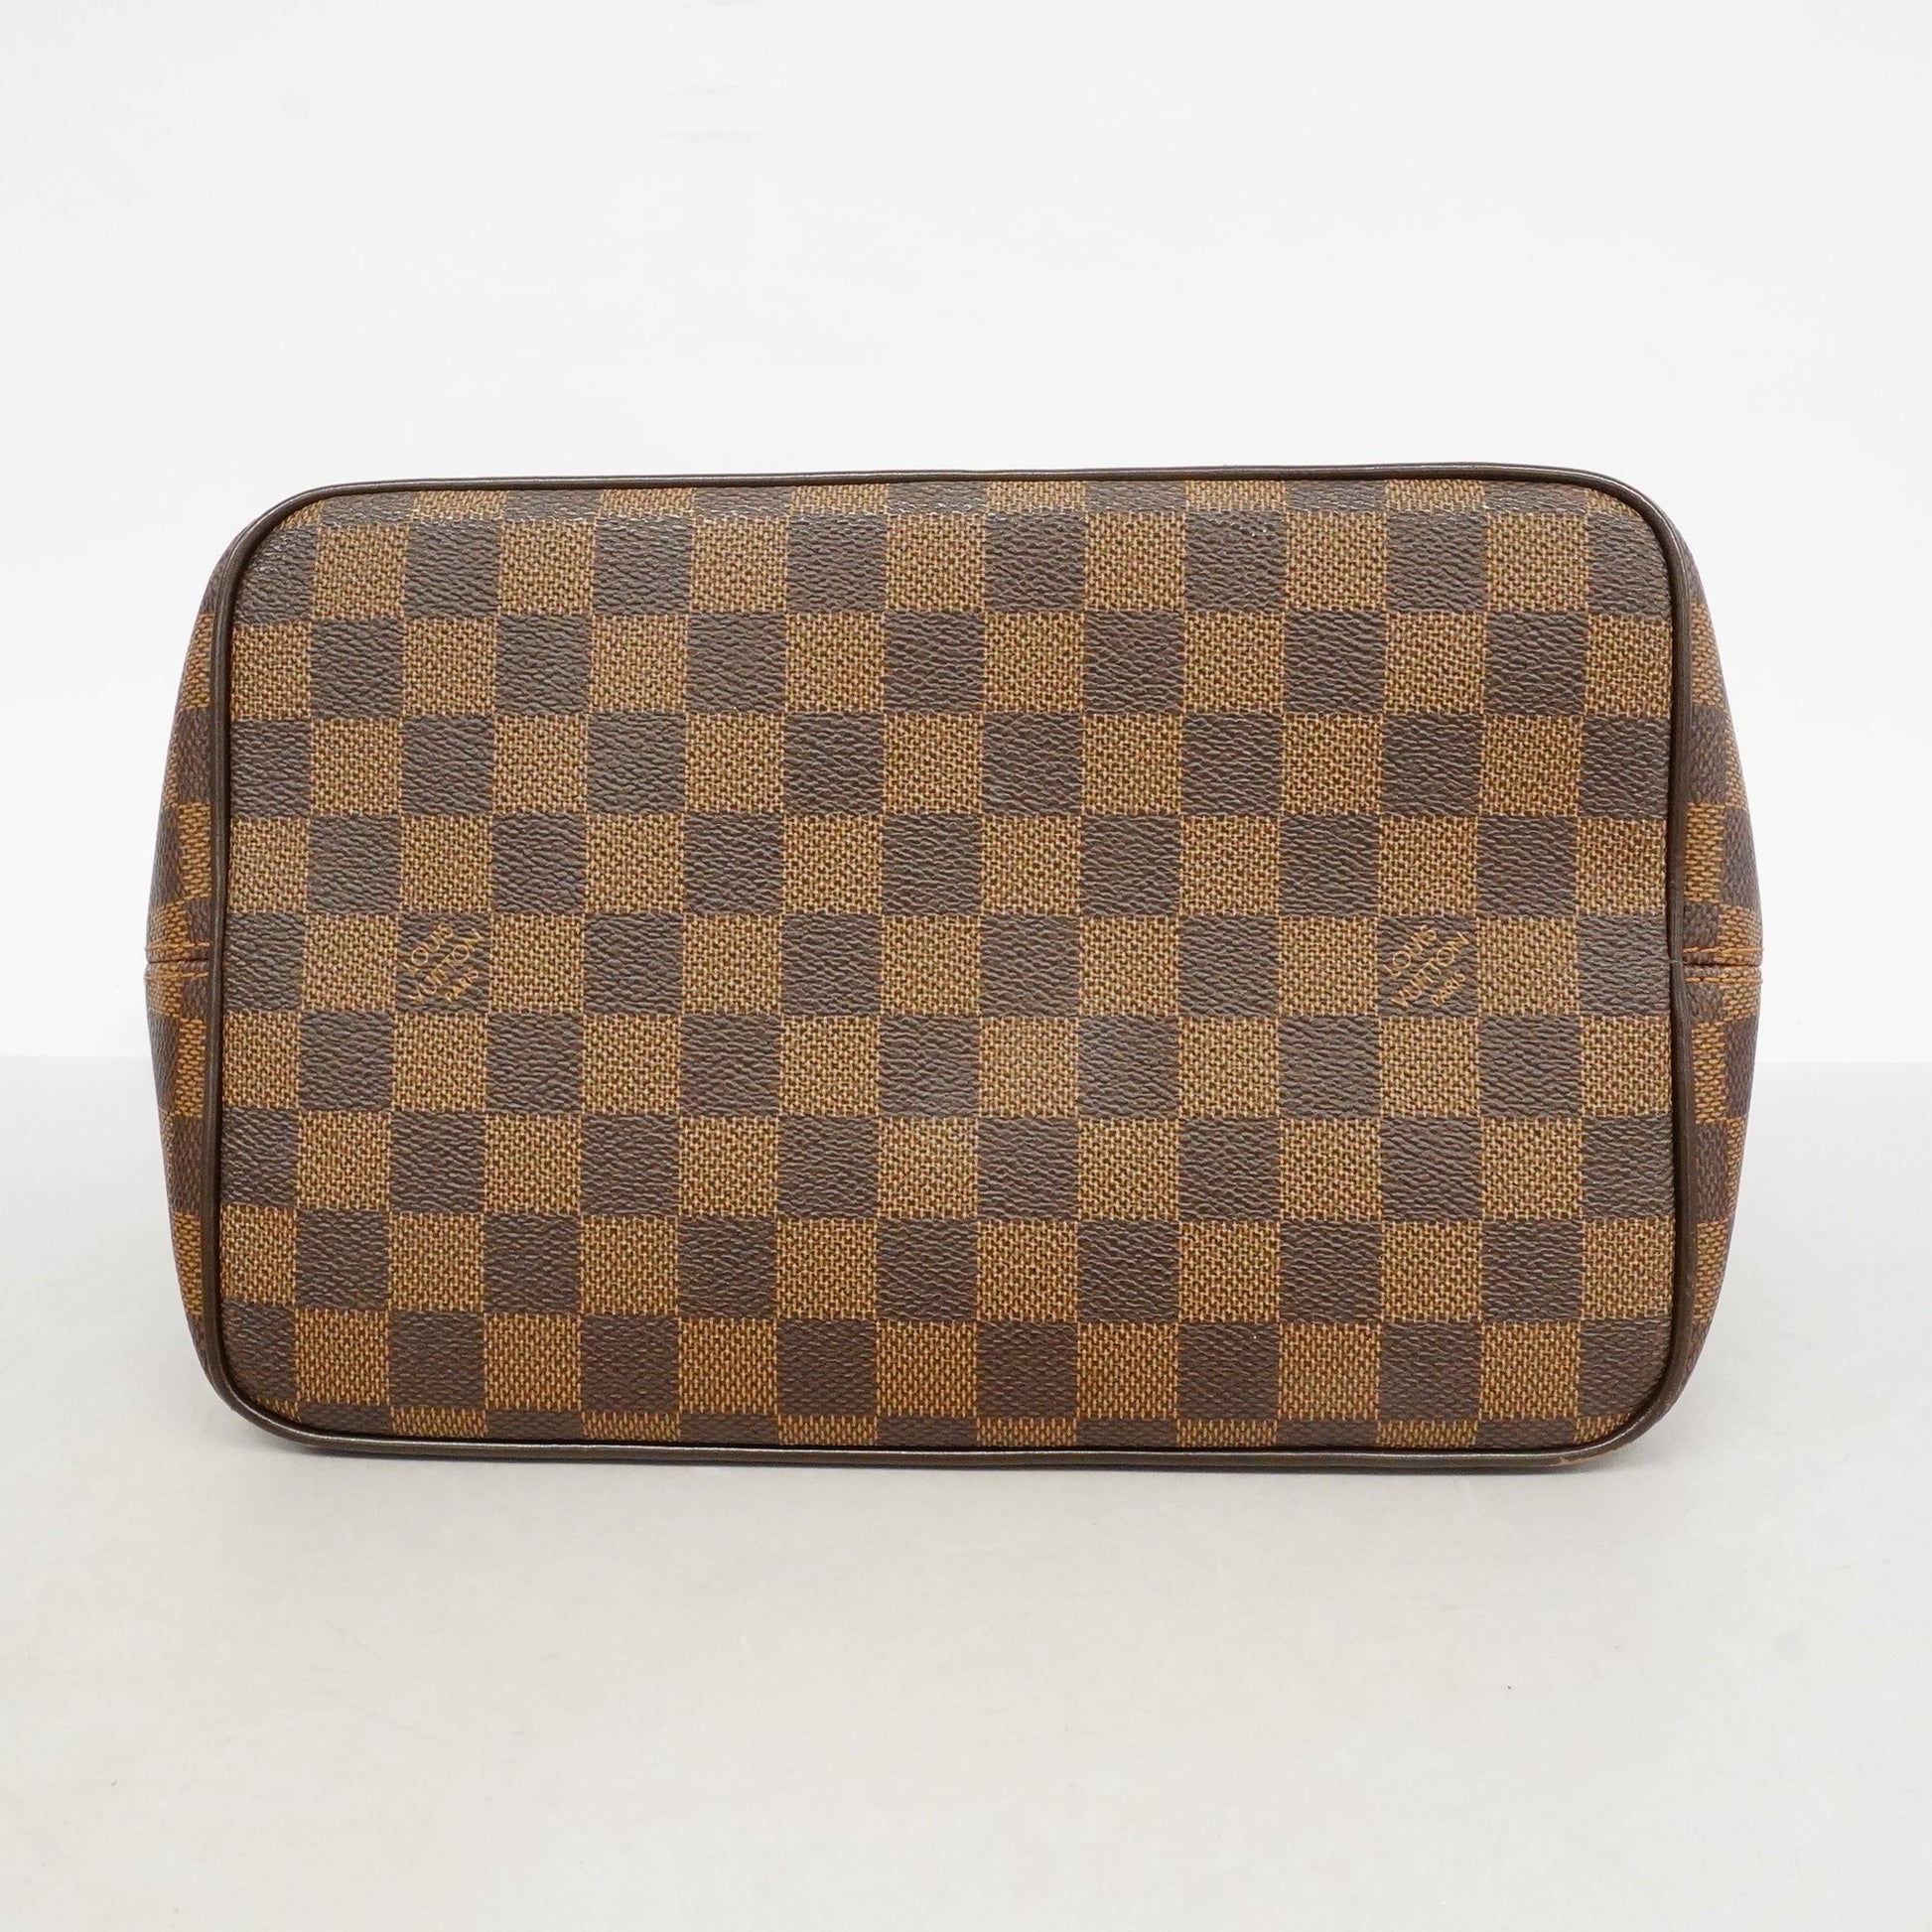 Louis Vuitton Damier Bergamo PM N41167 Ladies 2WAY bag Dark Brown